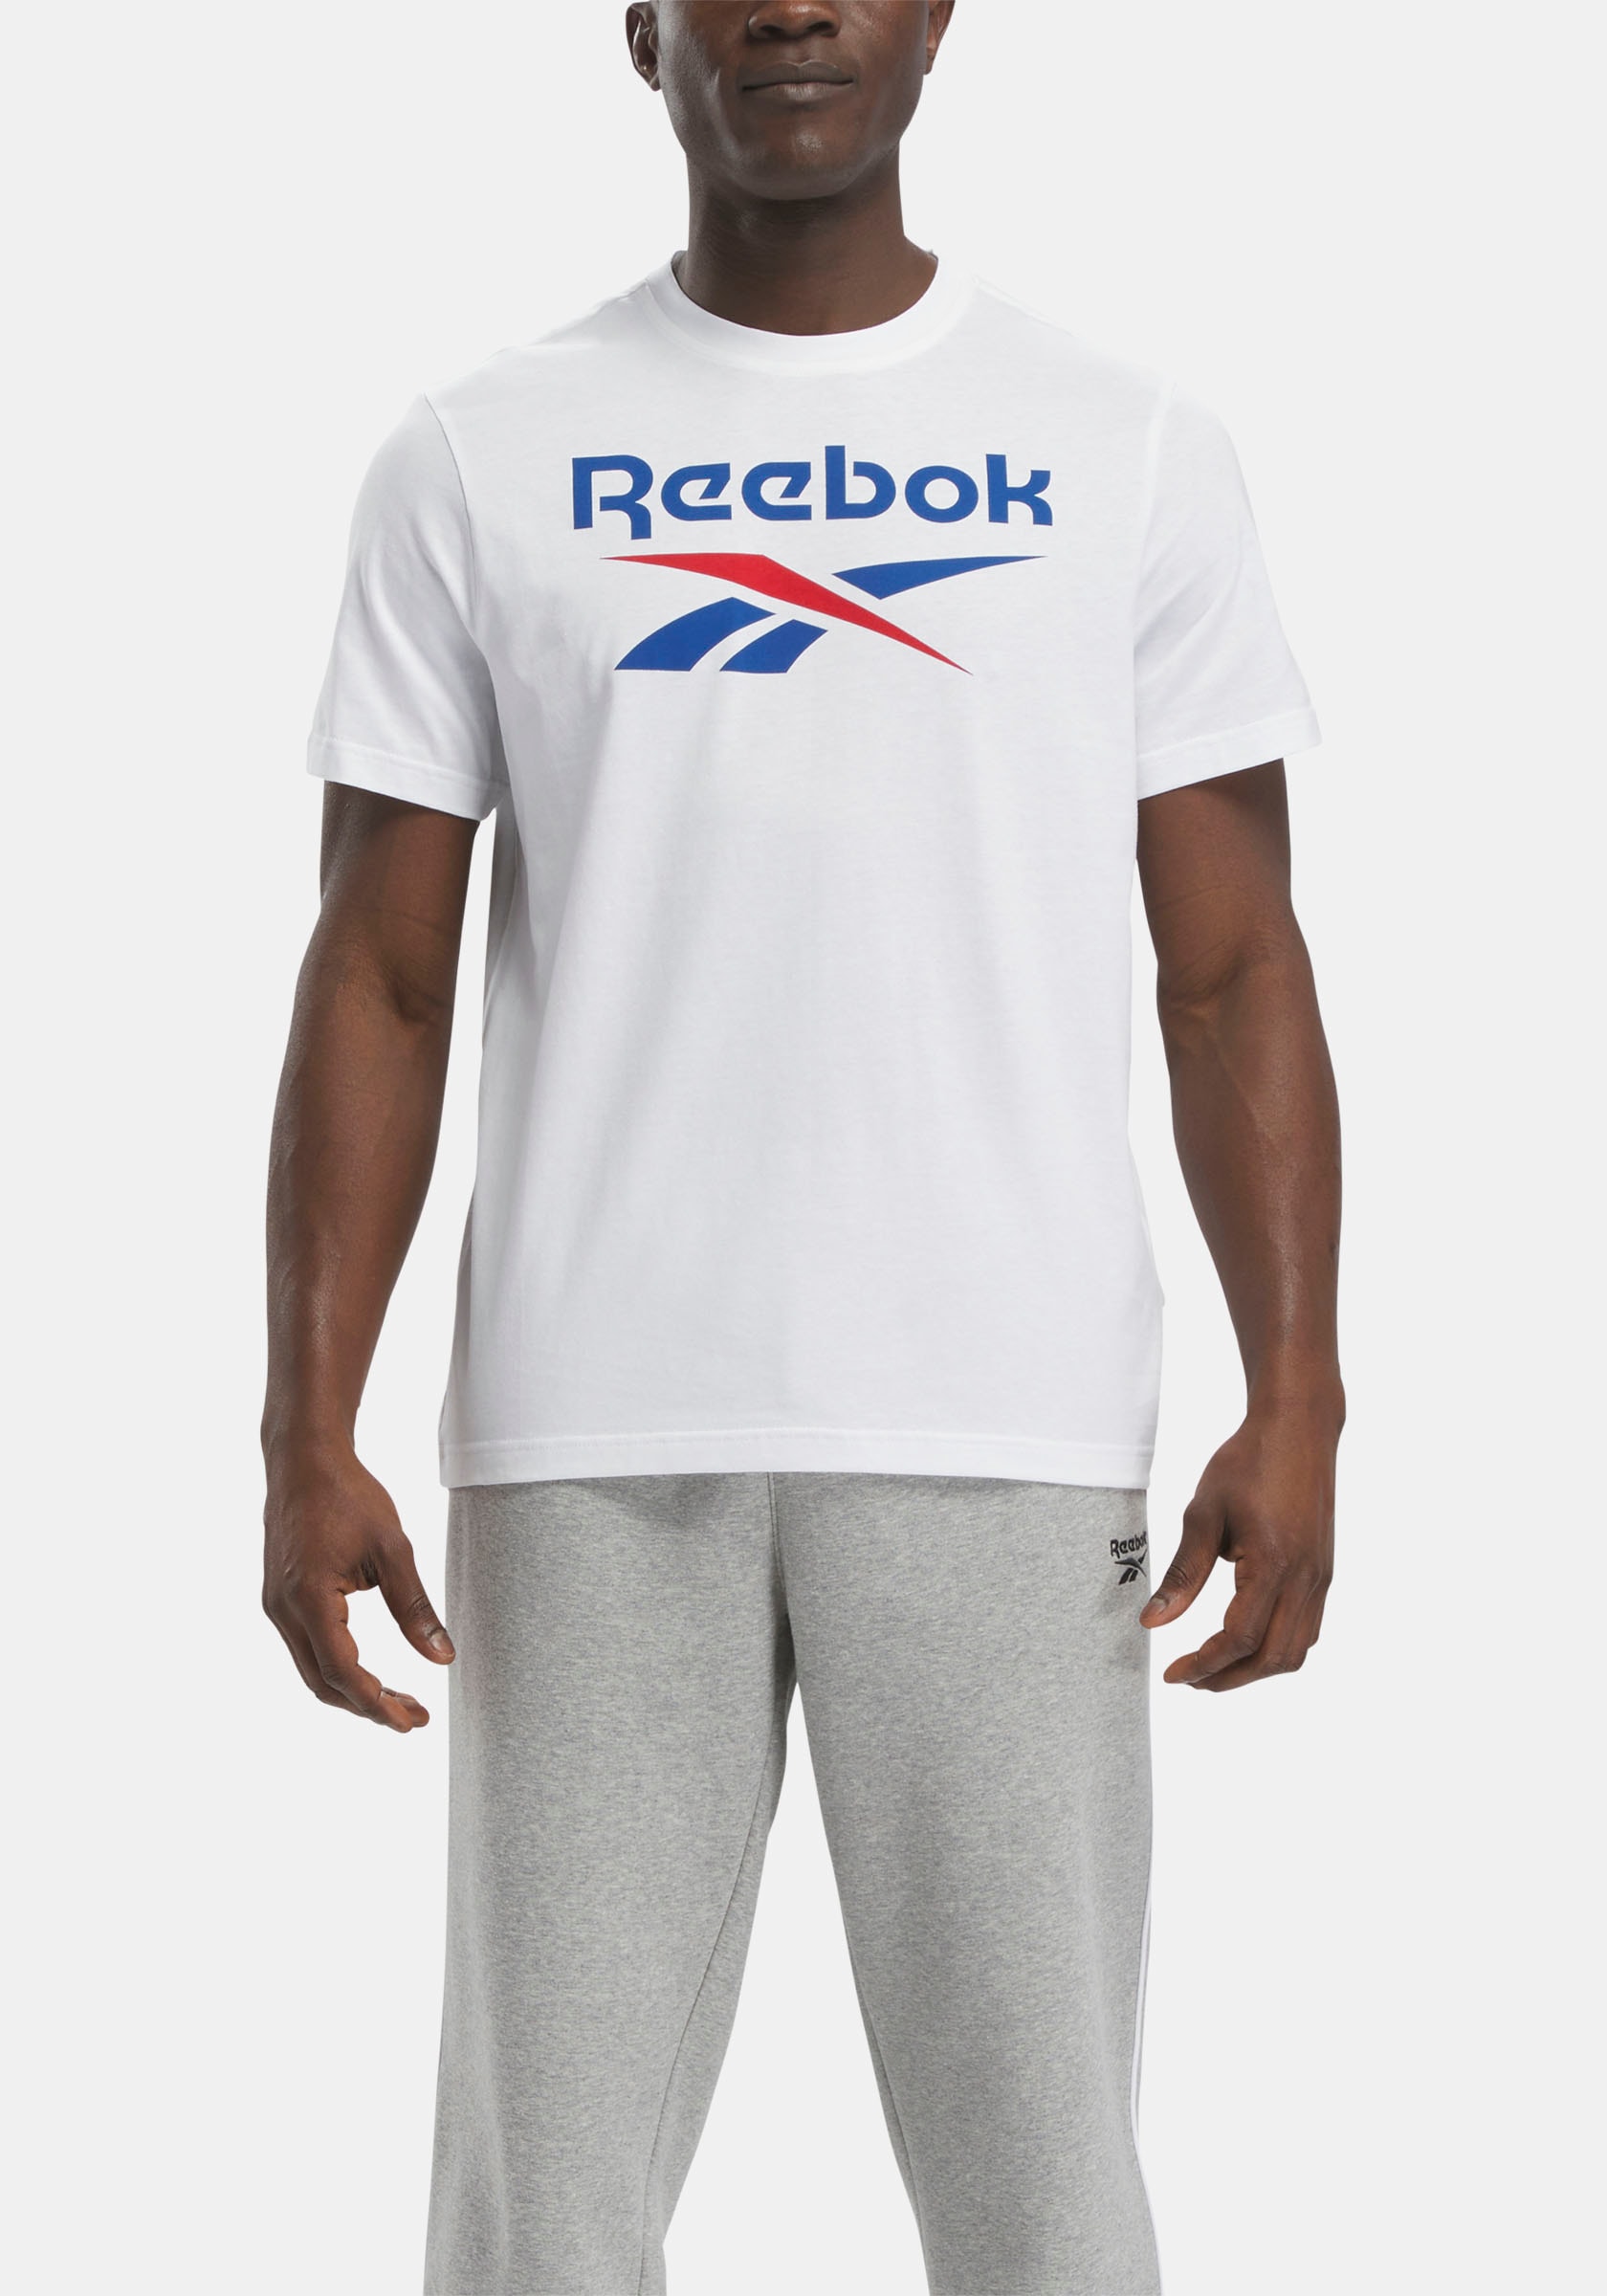 Reebok T-Shirt